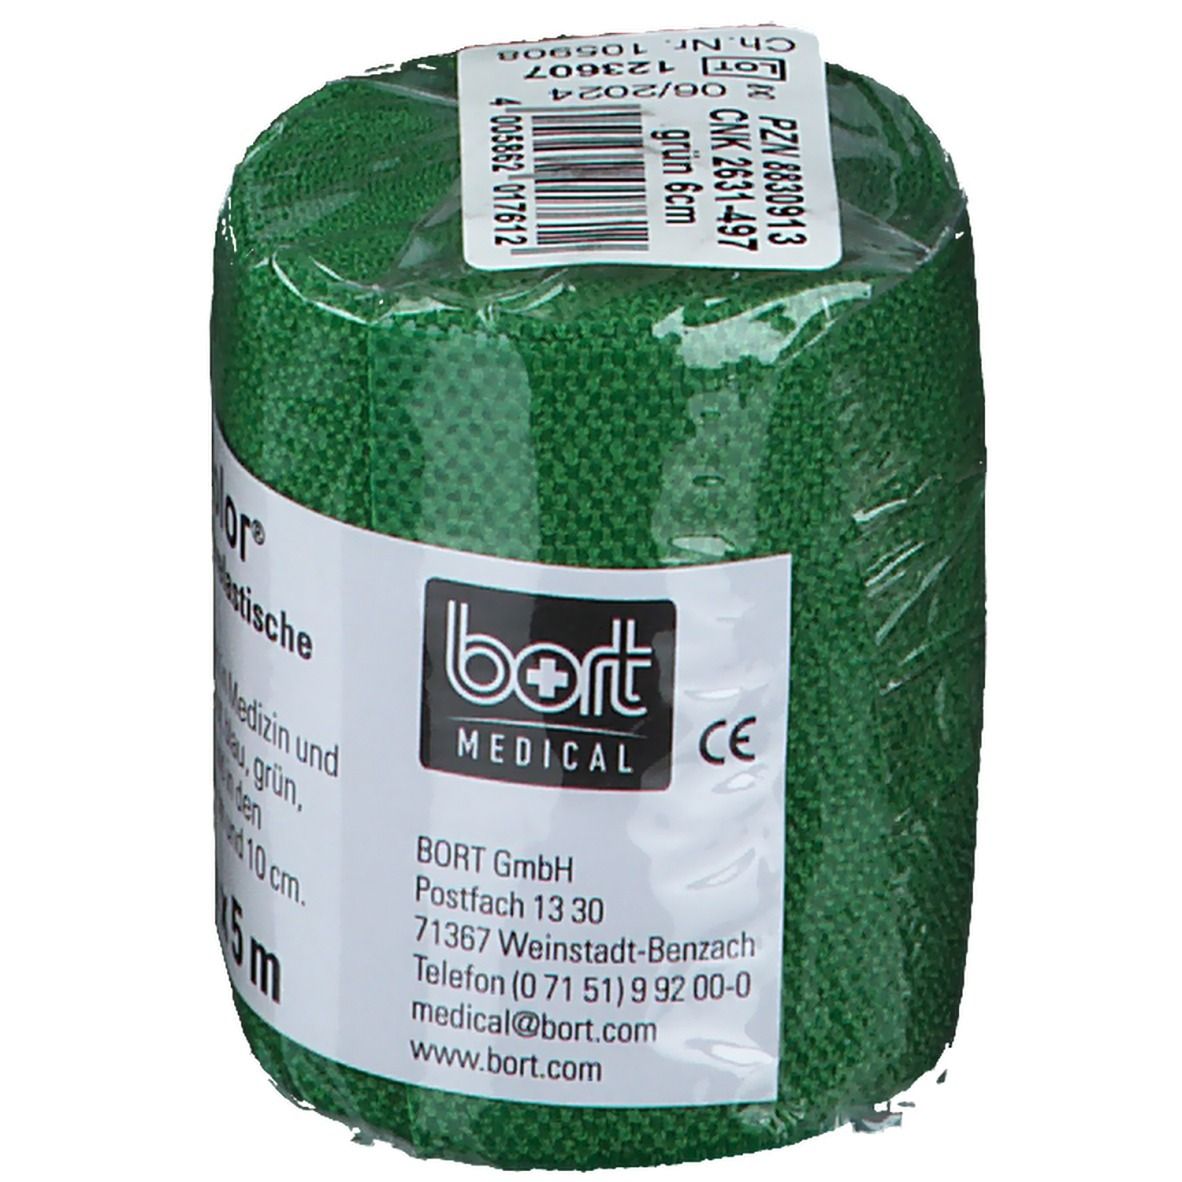 BORT StabiloColor® Binde 6 cm grün